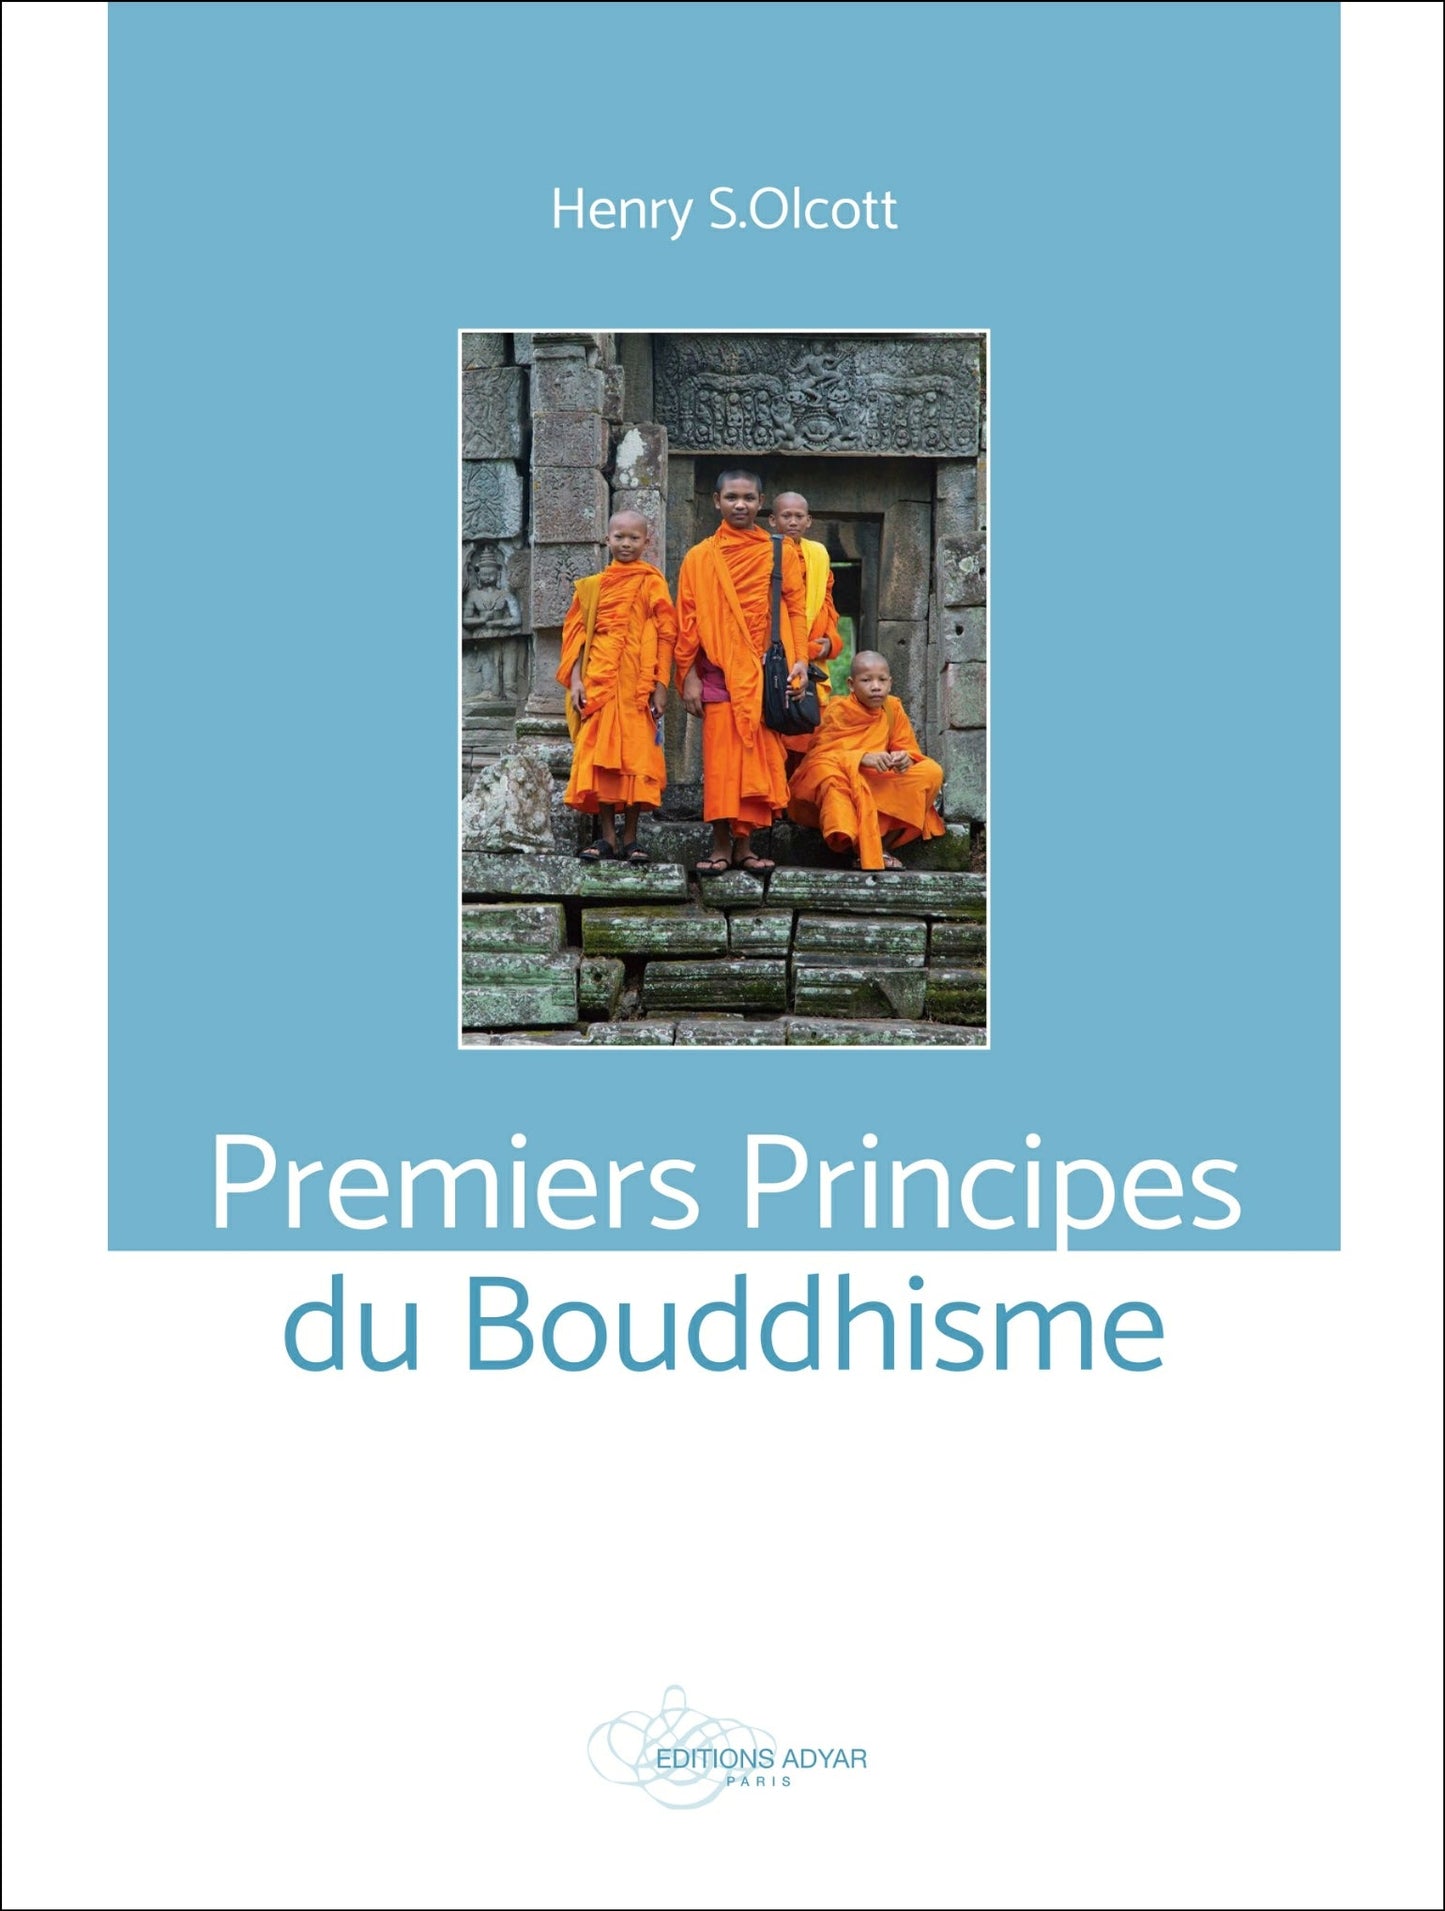 Occasion - Premiers Principes du Bouddhisme